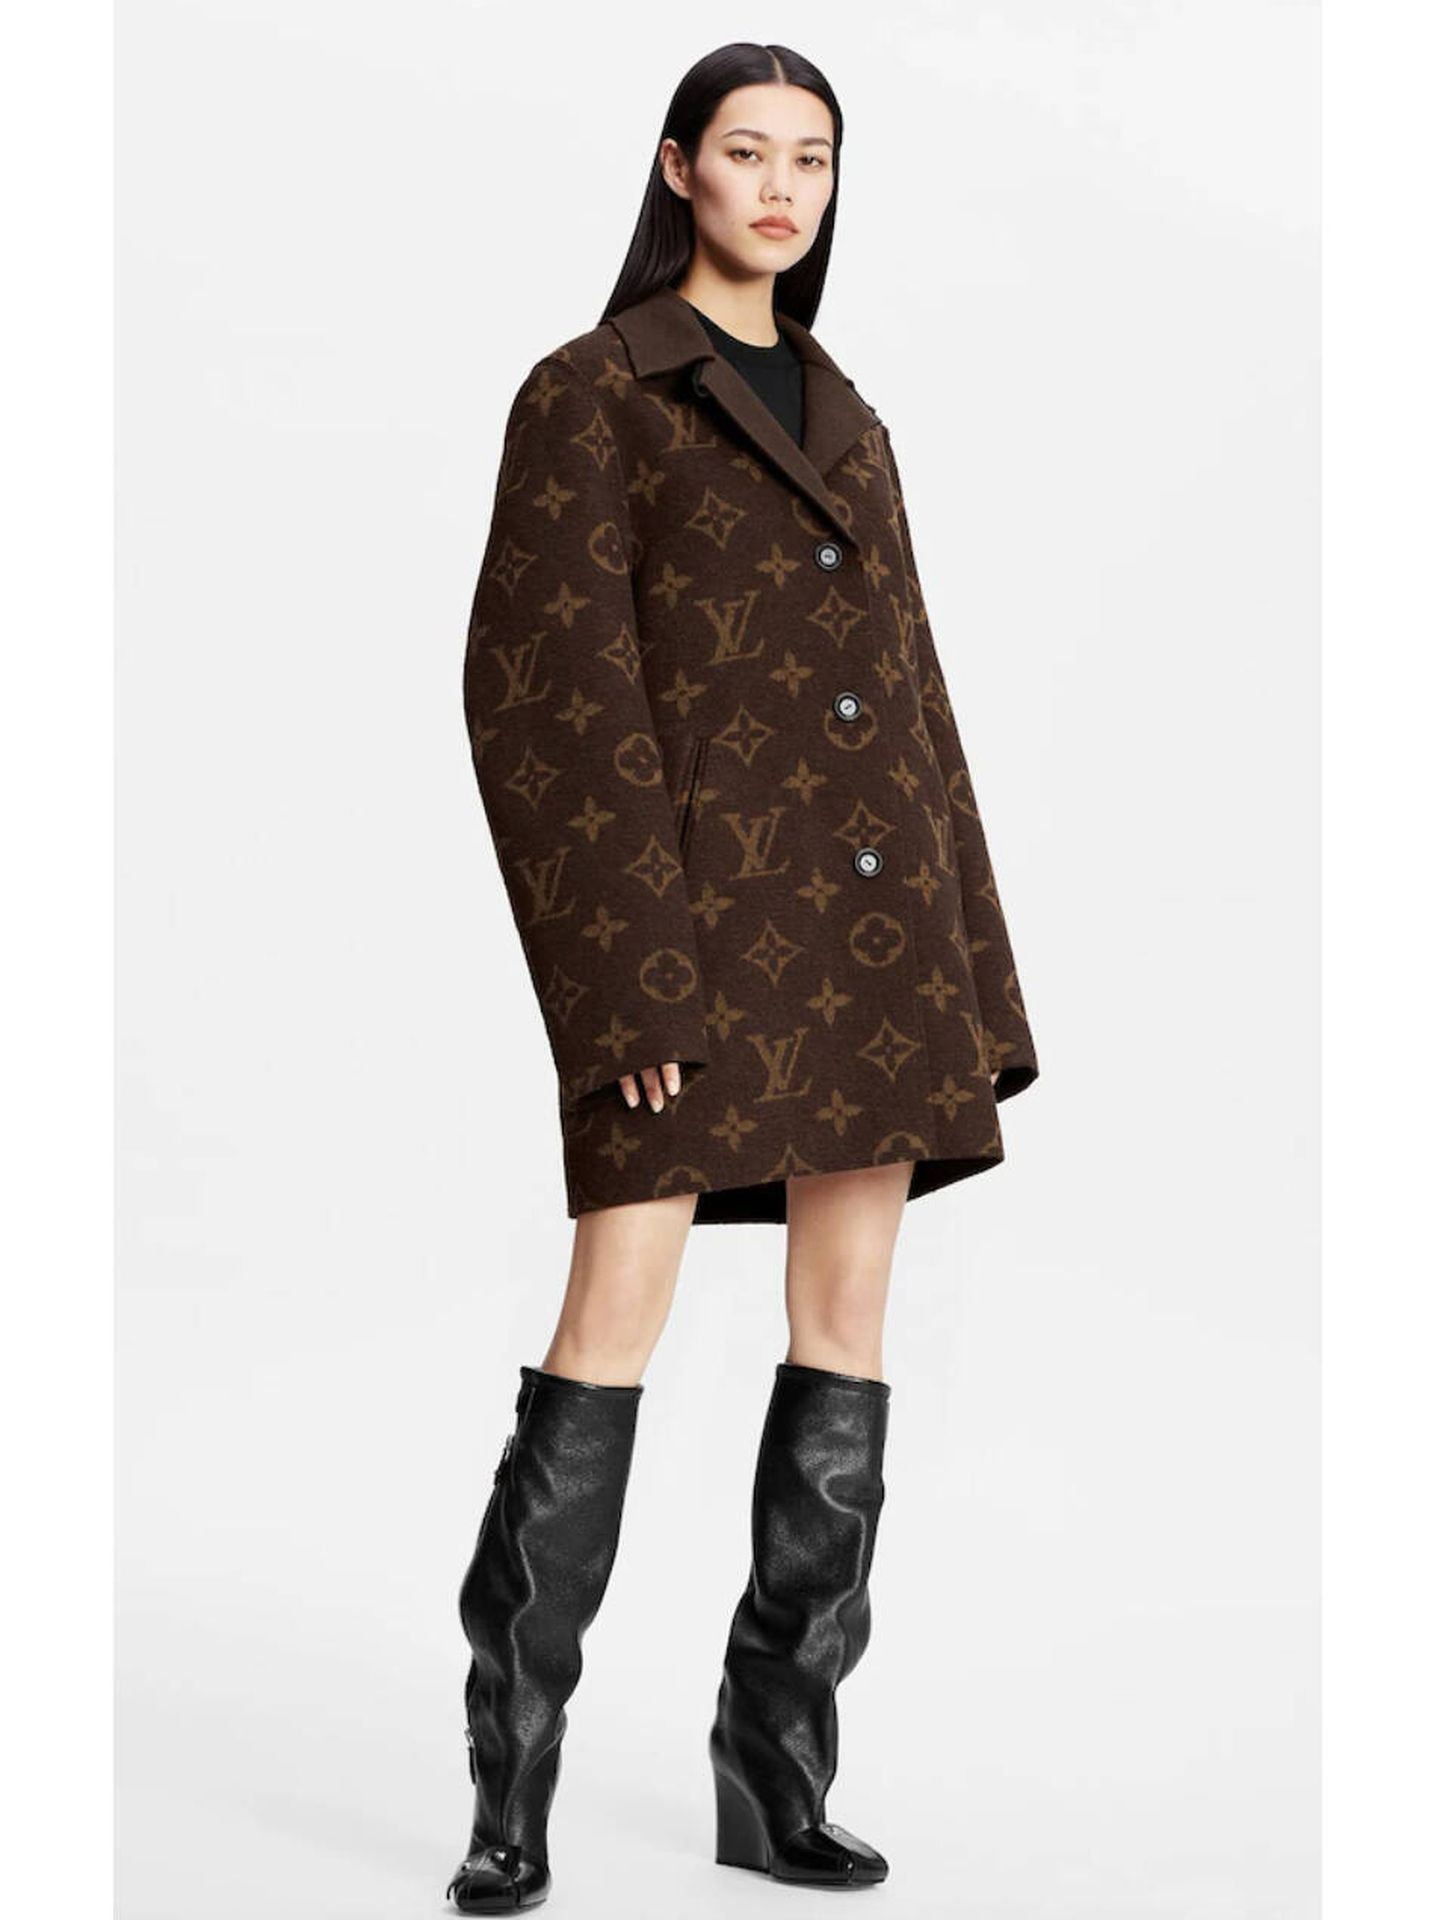 Adele y HoYeon Jung revolucionan las RRSS con esta chaqueta de Louis Vuitton